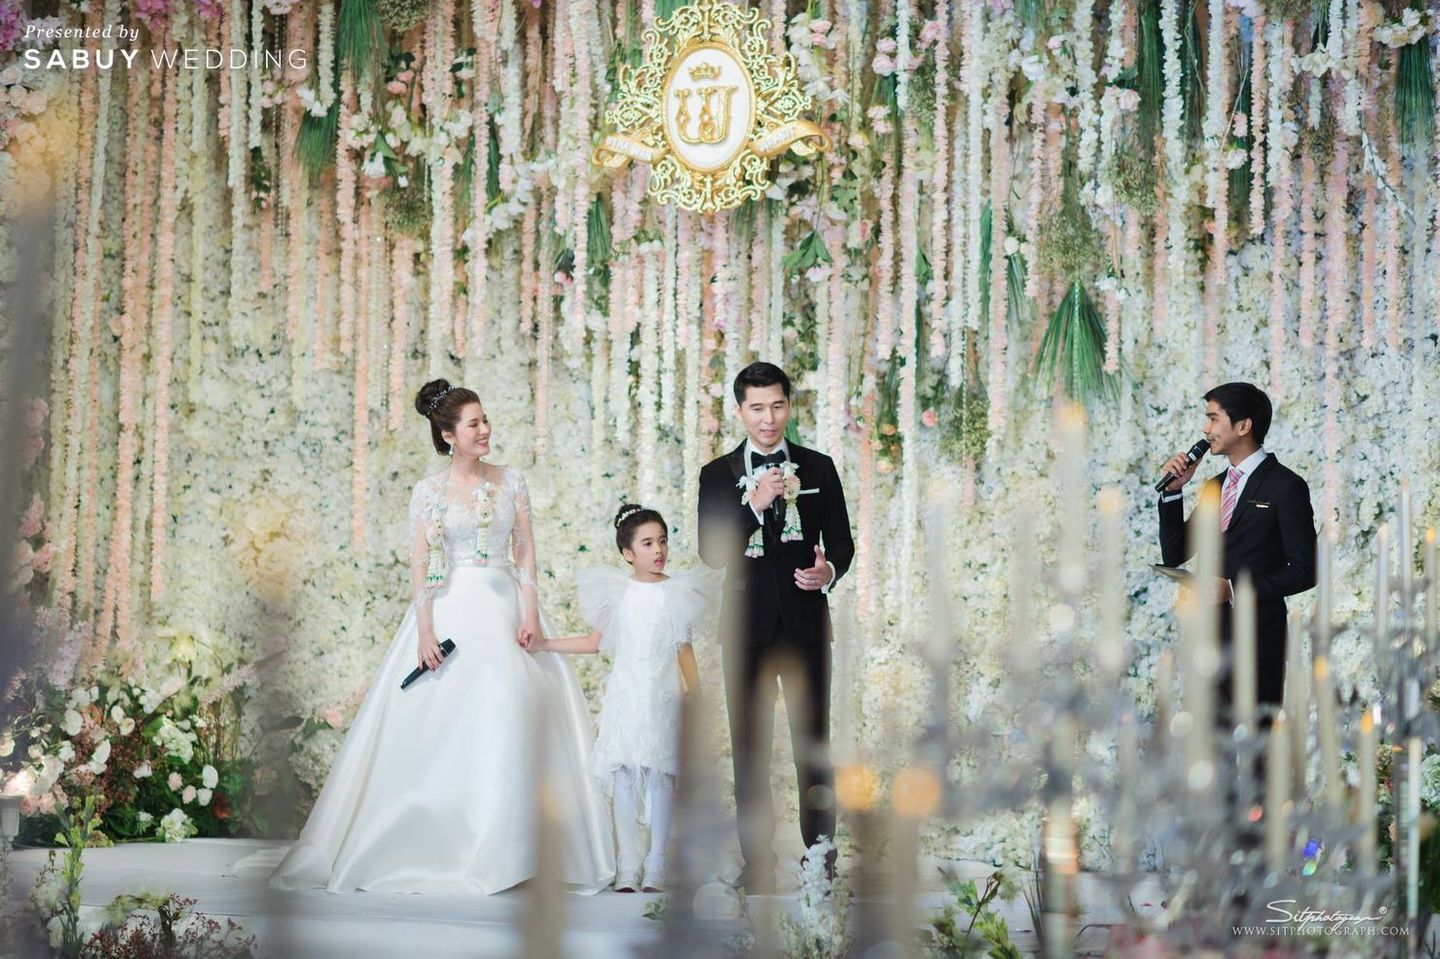 งานแต่งงาน,สถานที่แต่งงาน,โรงแรม,เจ้าสาว,ชุดเจ้าสาว,เจ้าบ่าว,ชุดเจ้าบ่าว,ตกแต่งงาน,จัดดอกไม้งานแต่ง,พิธีกรงานแต่ง รีวิวงานแต่งสุดอบอุ่นแห่งปี ‘We are Family’ งานนี้ห้อมล้อมด้วยรัก @Mandarin Oriental